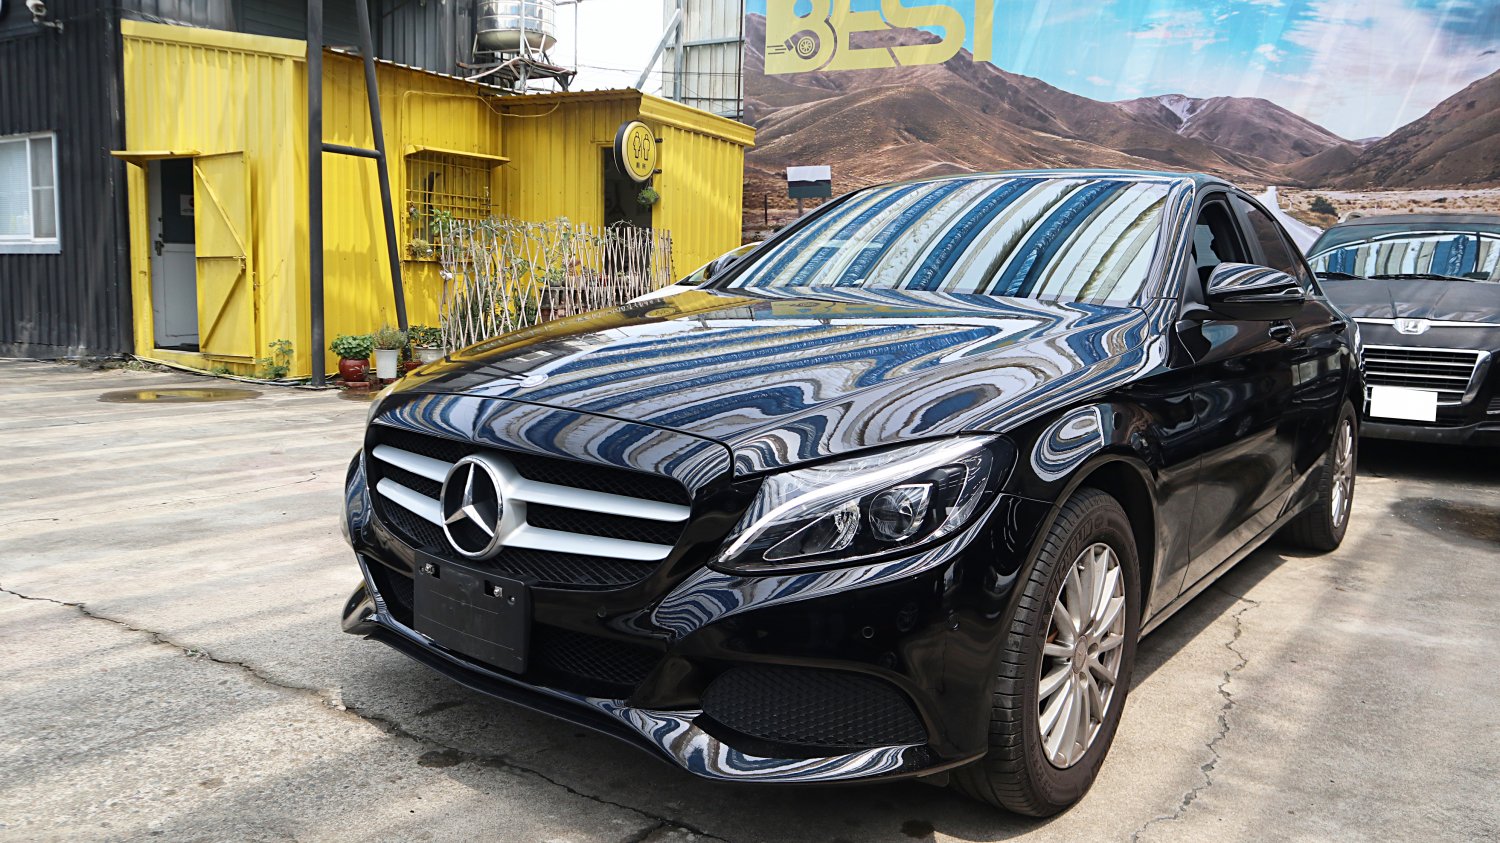 Benz 賓士 ／ C-Class ／ 2015年 ／ 2015年Benz C180 黑色 賓士中古車 ／ 九州欣旺汽車 (台南)